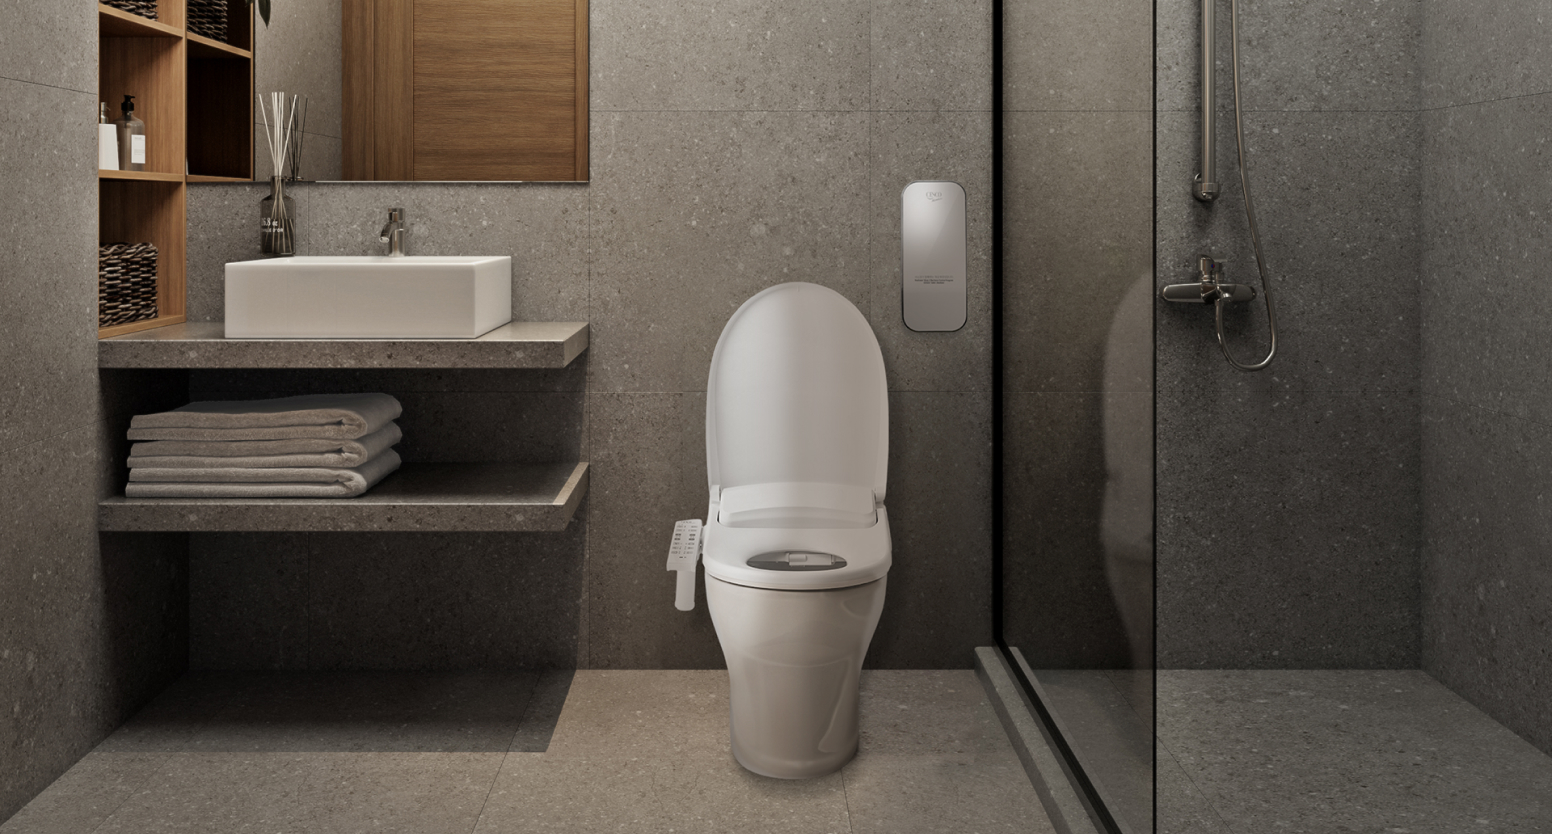 객실 내 화장실에는 벽걸이형 세면대와 세스코(CESCO) 유어핏 비데가 설치되어 있고, 변기 우측에는 자동 변기세정 살균기 프레쉬제닉이 있습니다.